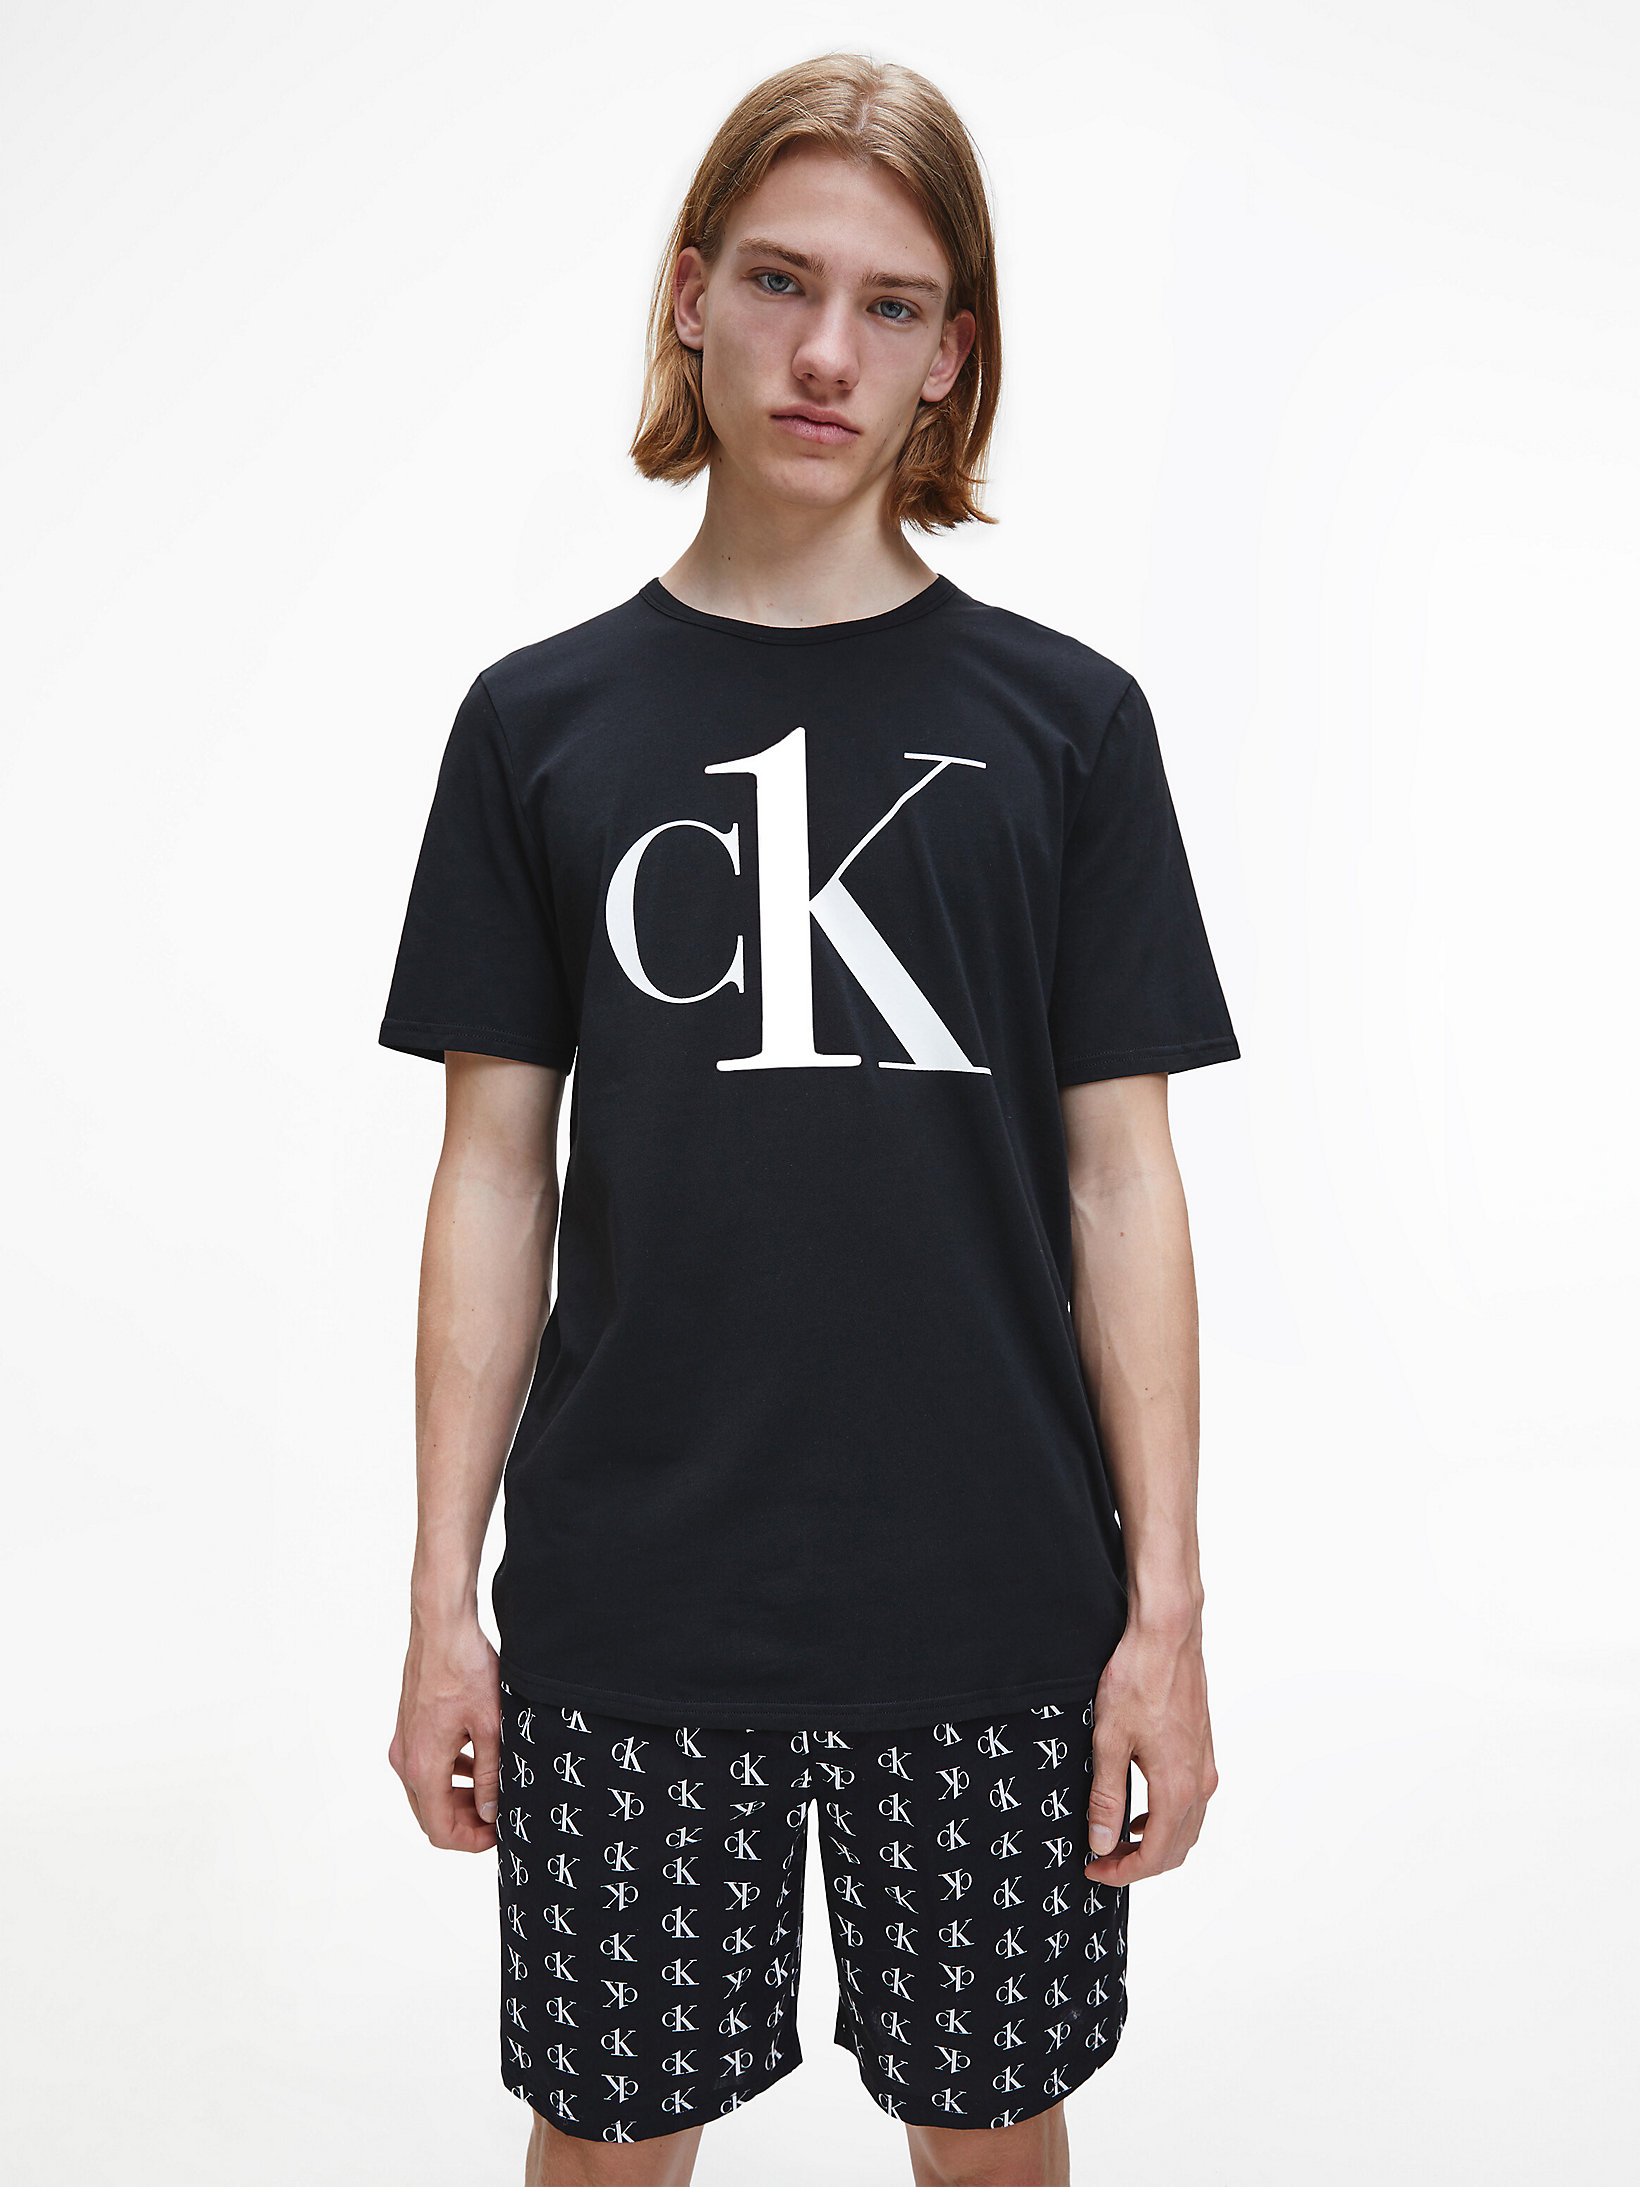 T-shirt lounge CK One Calvin Klein Uomo Abbigliamento Intimo Magliette intime 